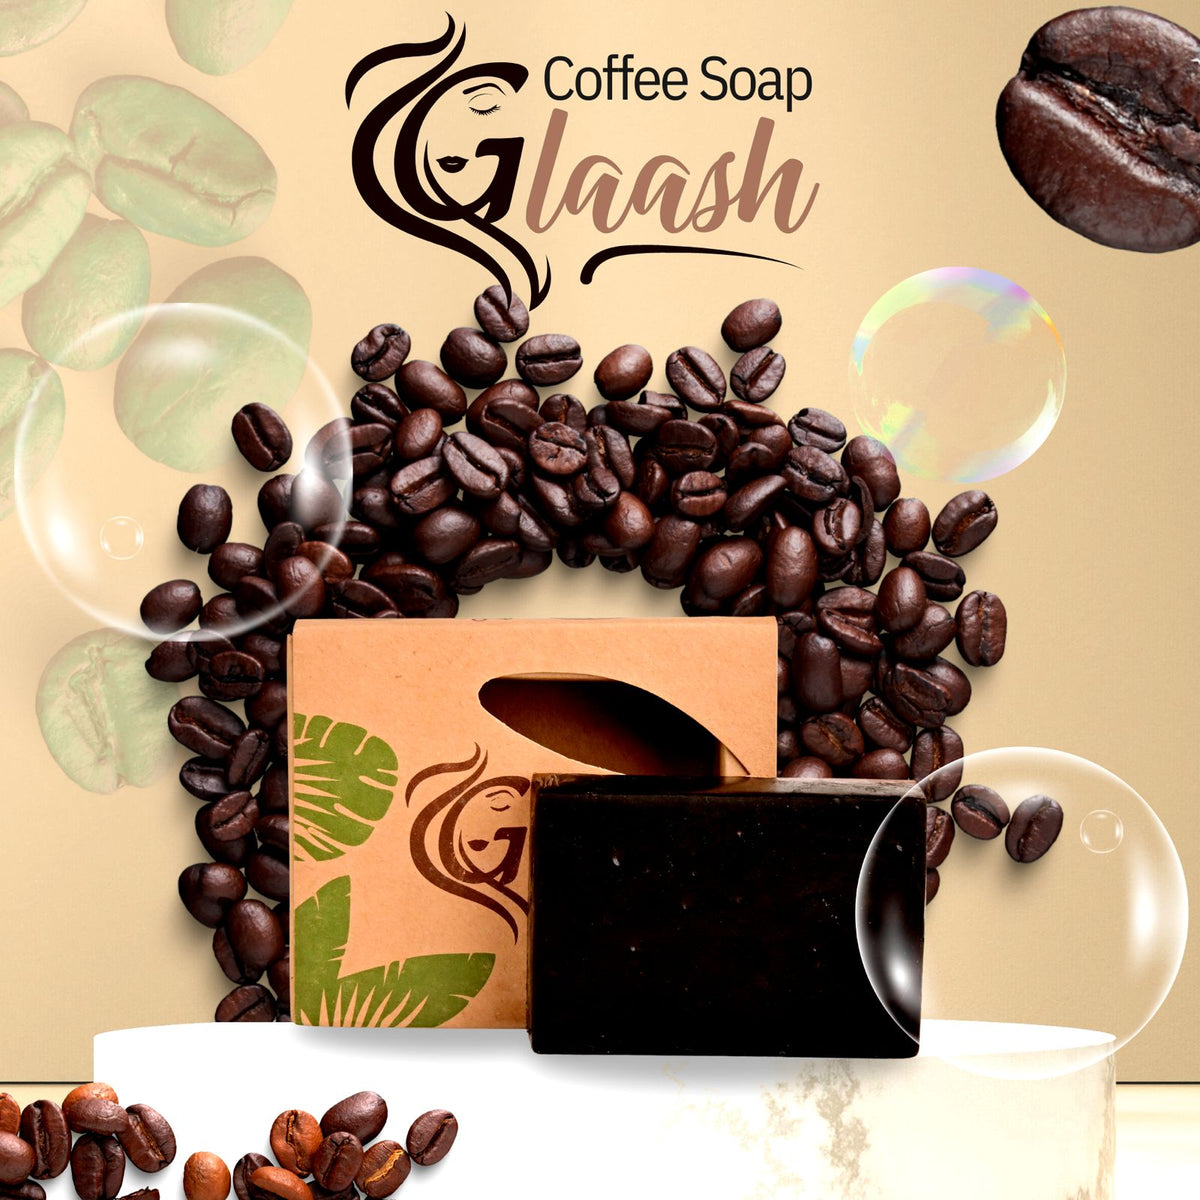 Glaash Coffee Organic Soap Bar 100gm